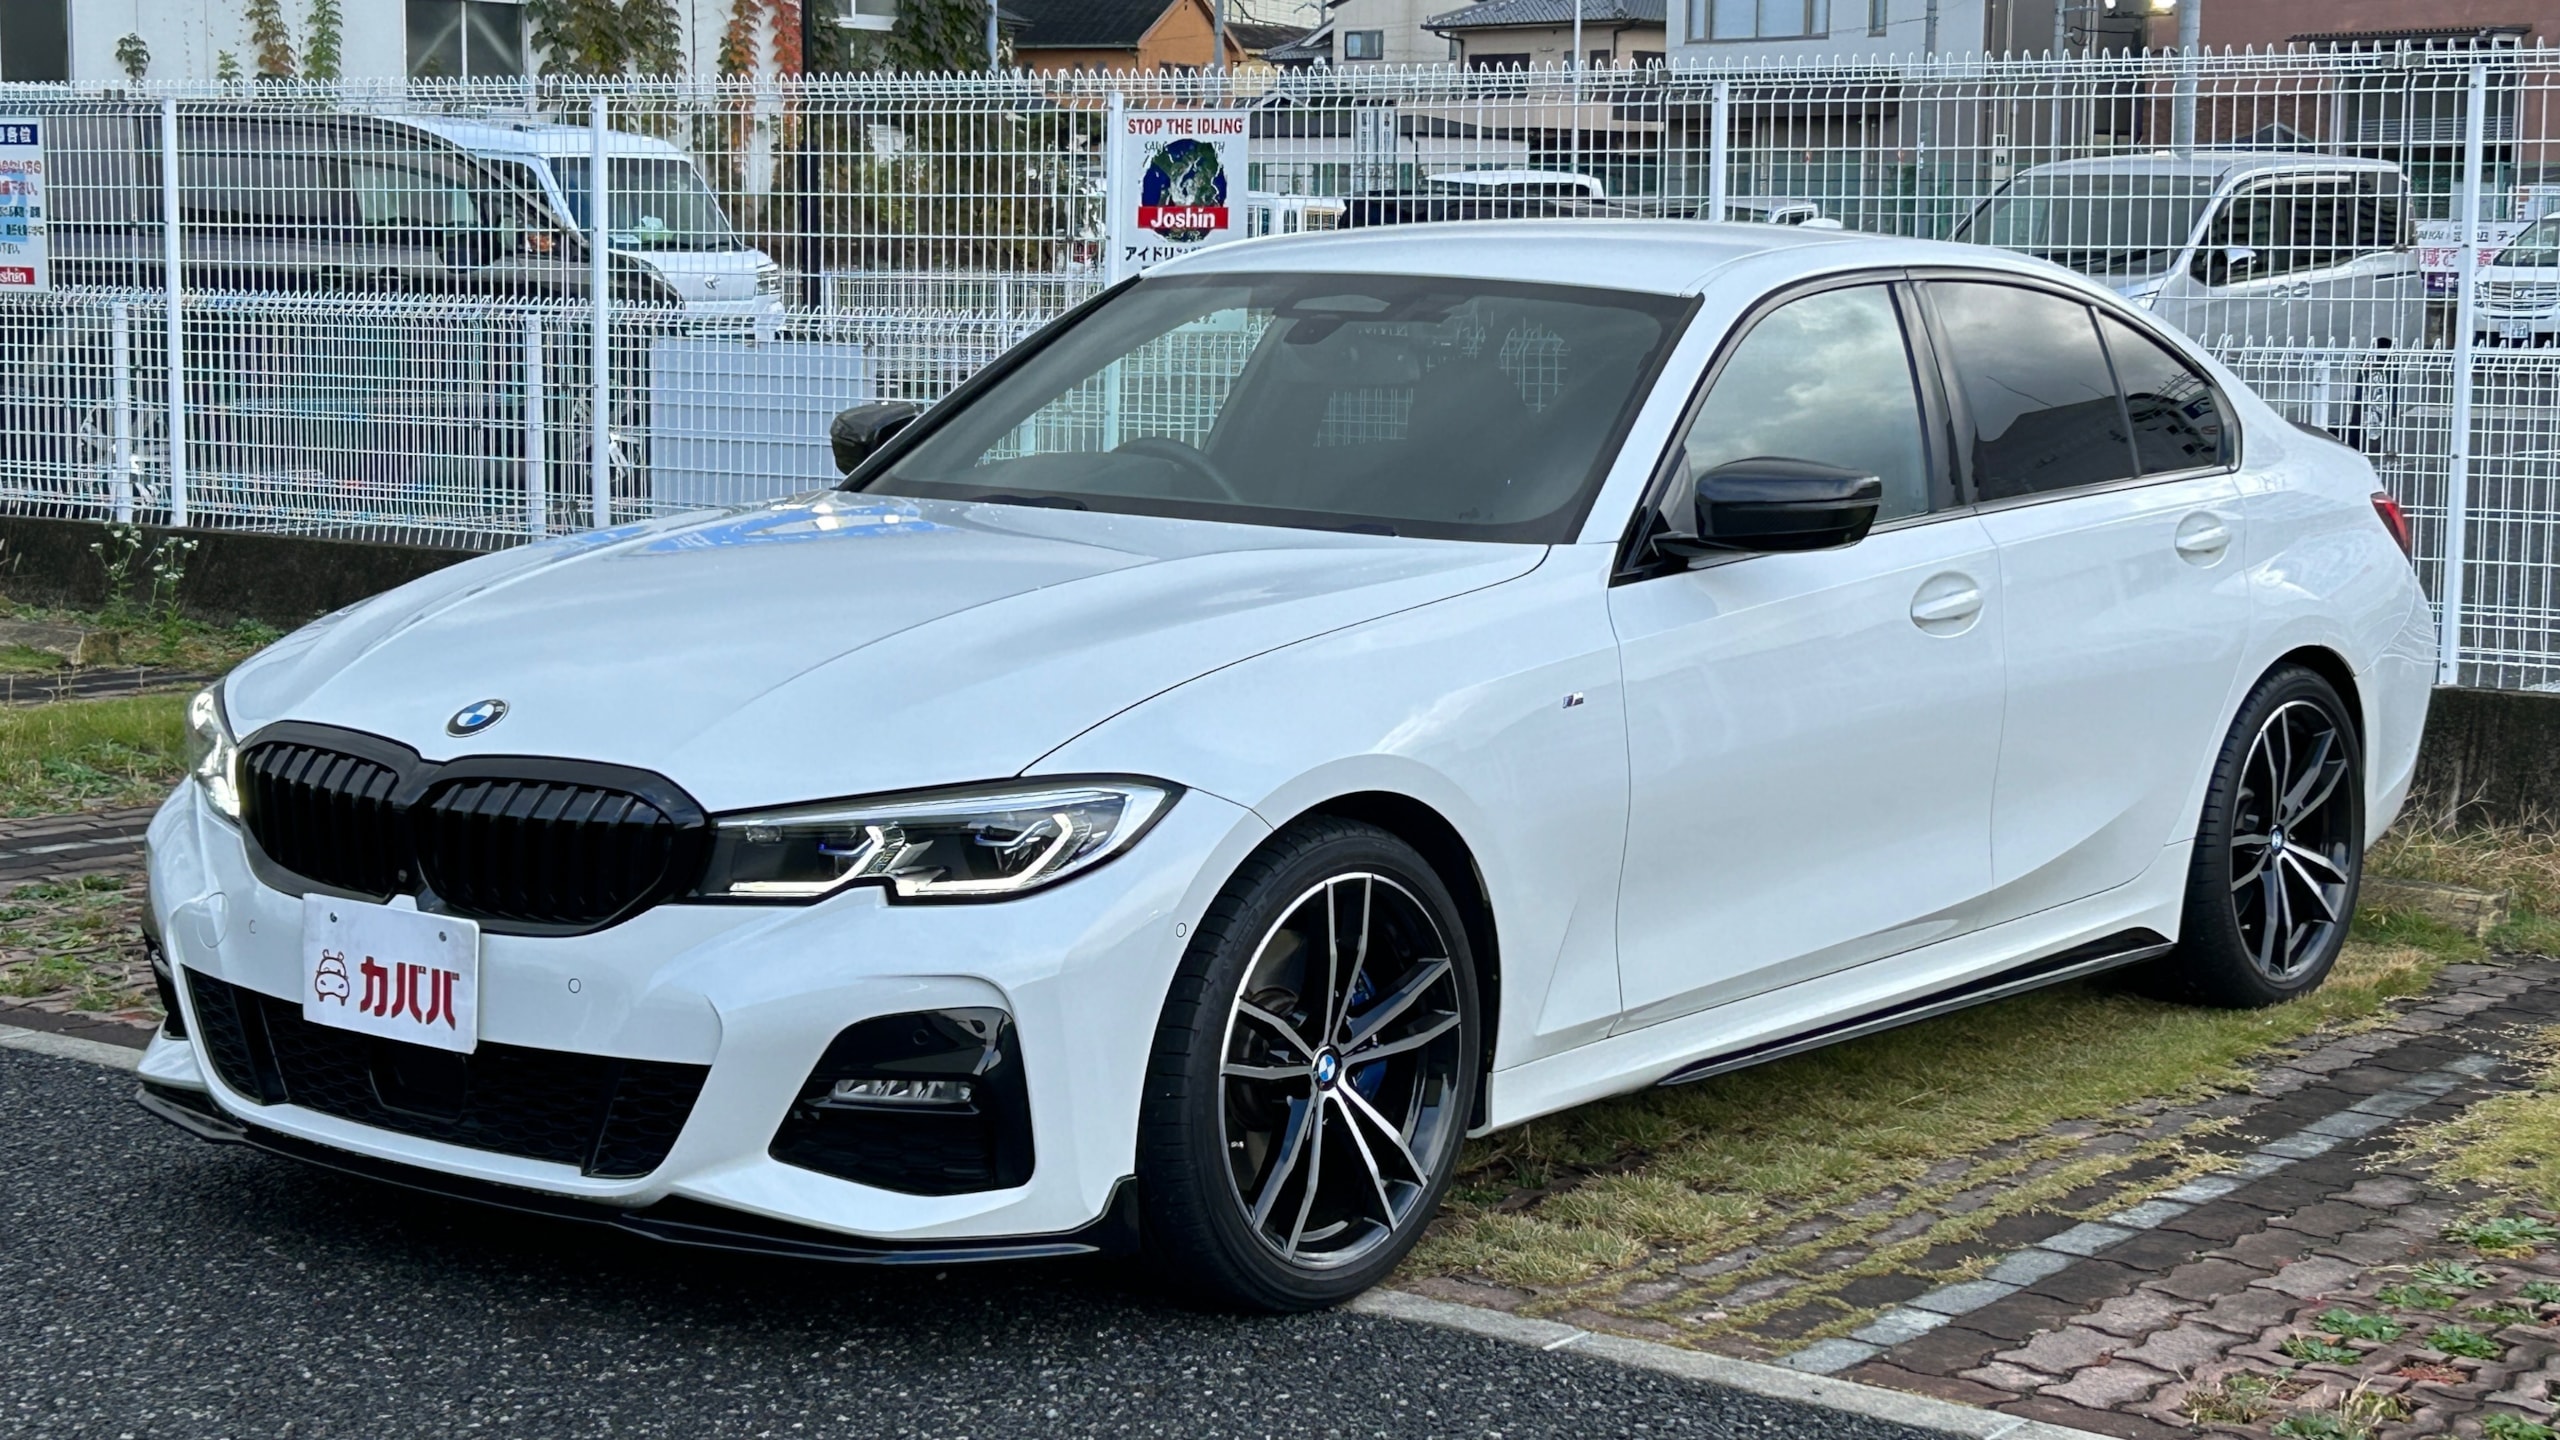 3シリーズ 330i Mスポーツ(BMW)2019年式 378万円の中古車 - 自動車